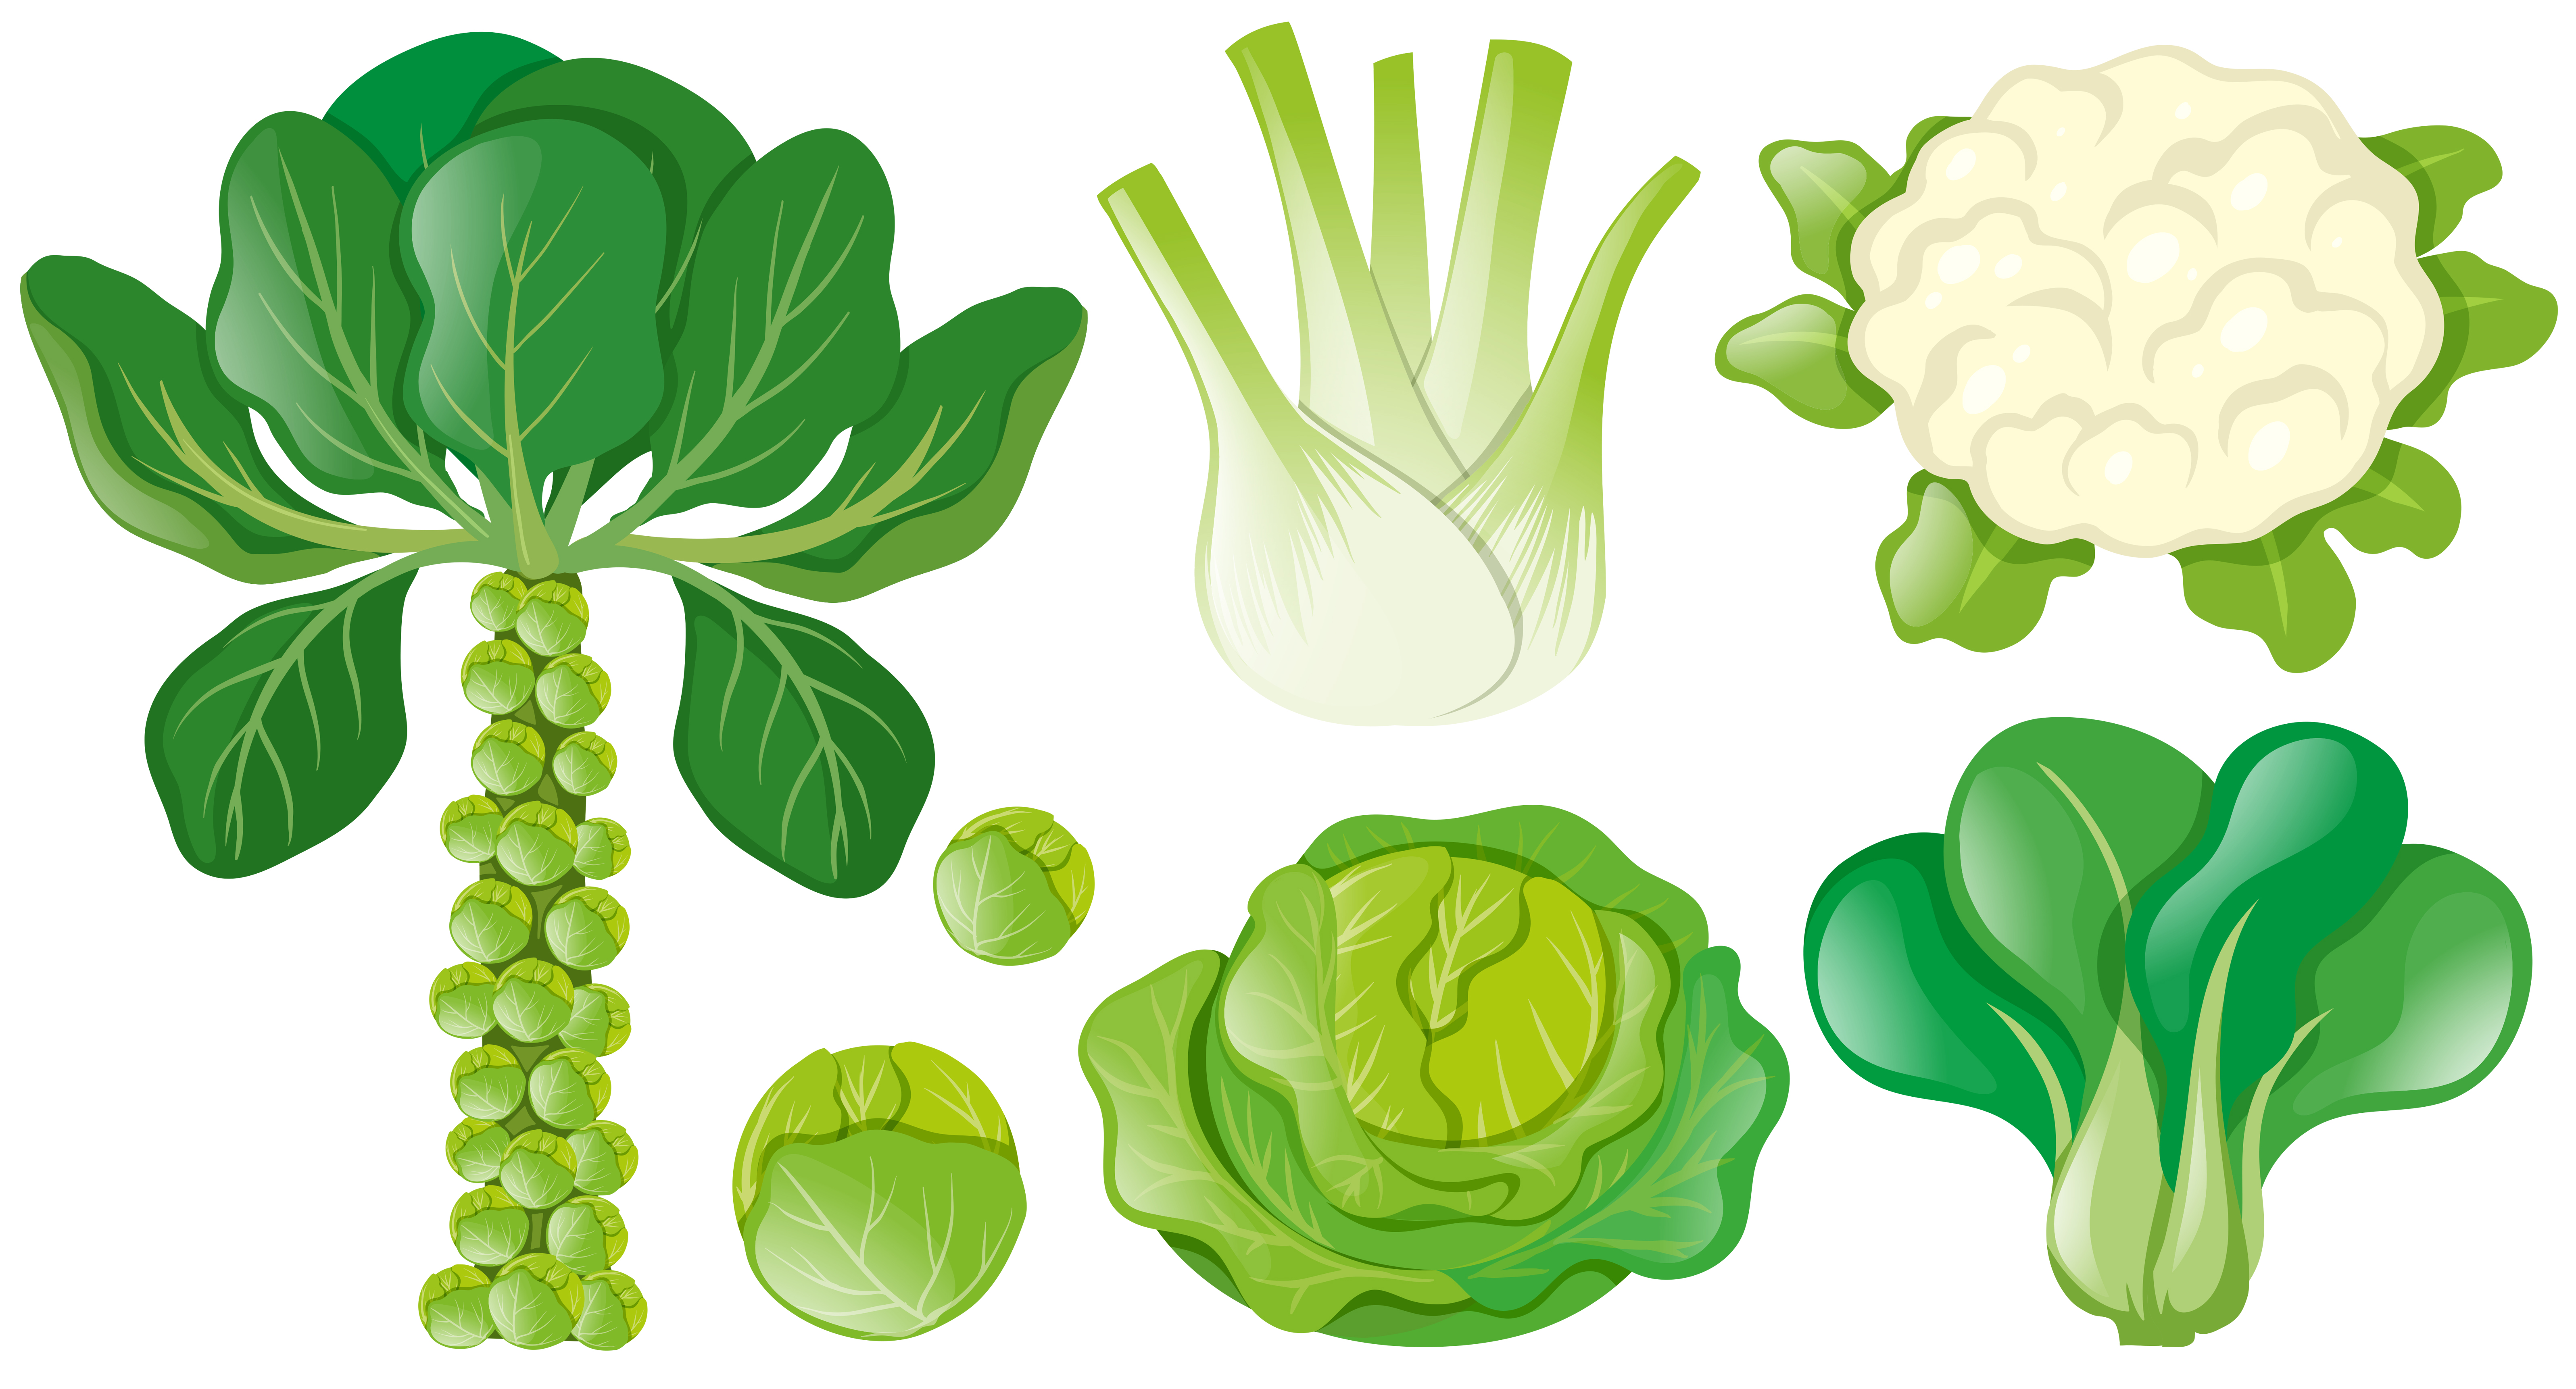 Peer angst Concreet Verschillende soorten groene groenten 370359 - Download Free Vectors,  Vector Bestanden, Ontwerpen Templates